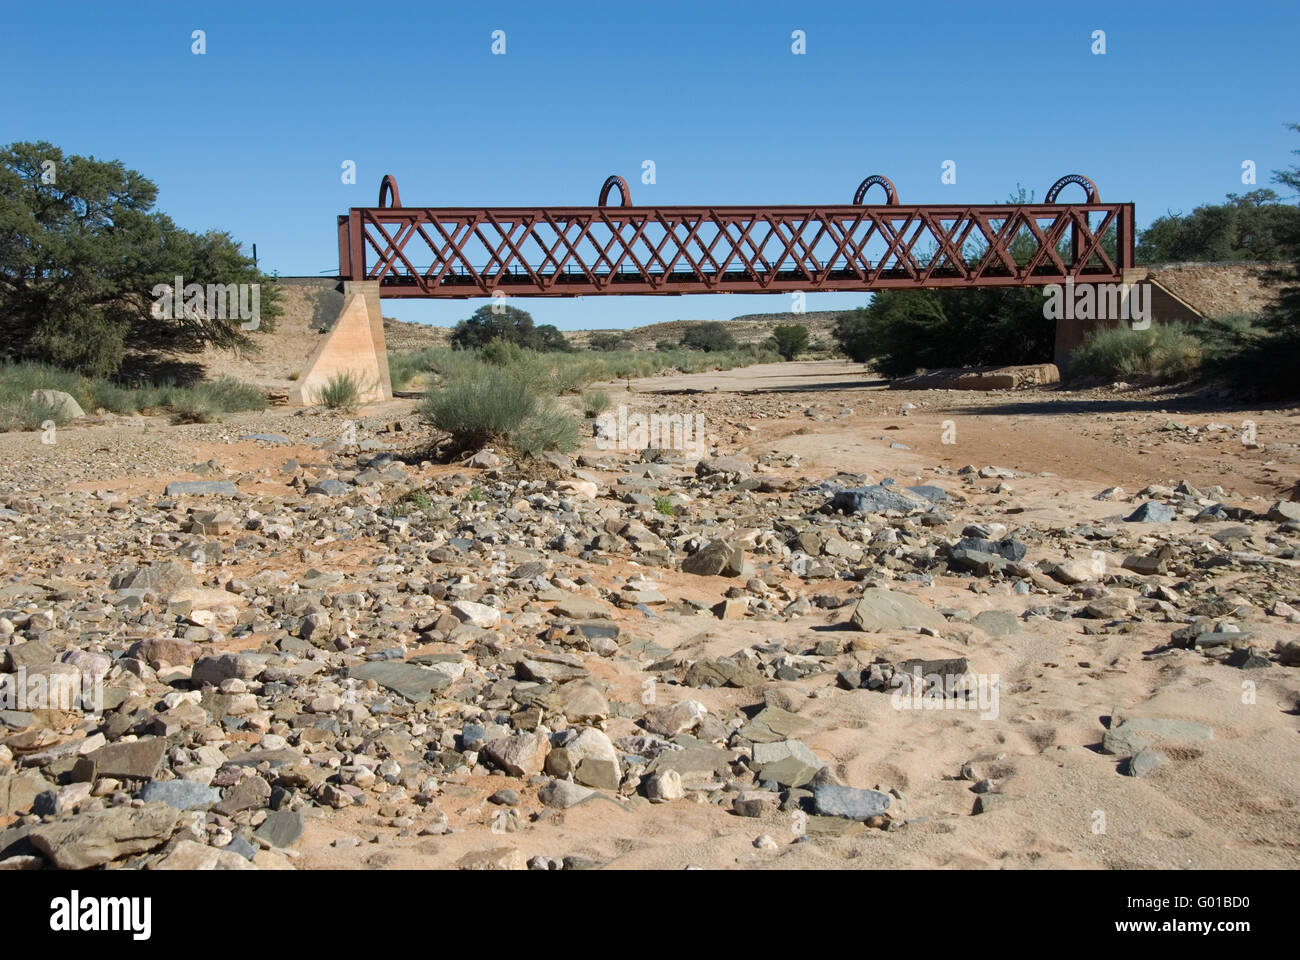 Railway bridge Stock Photo